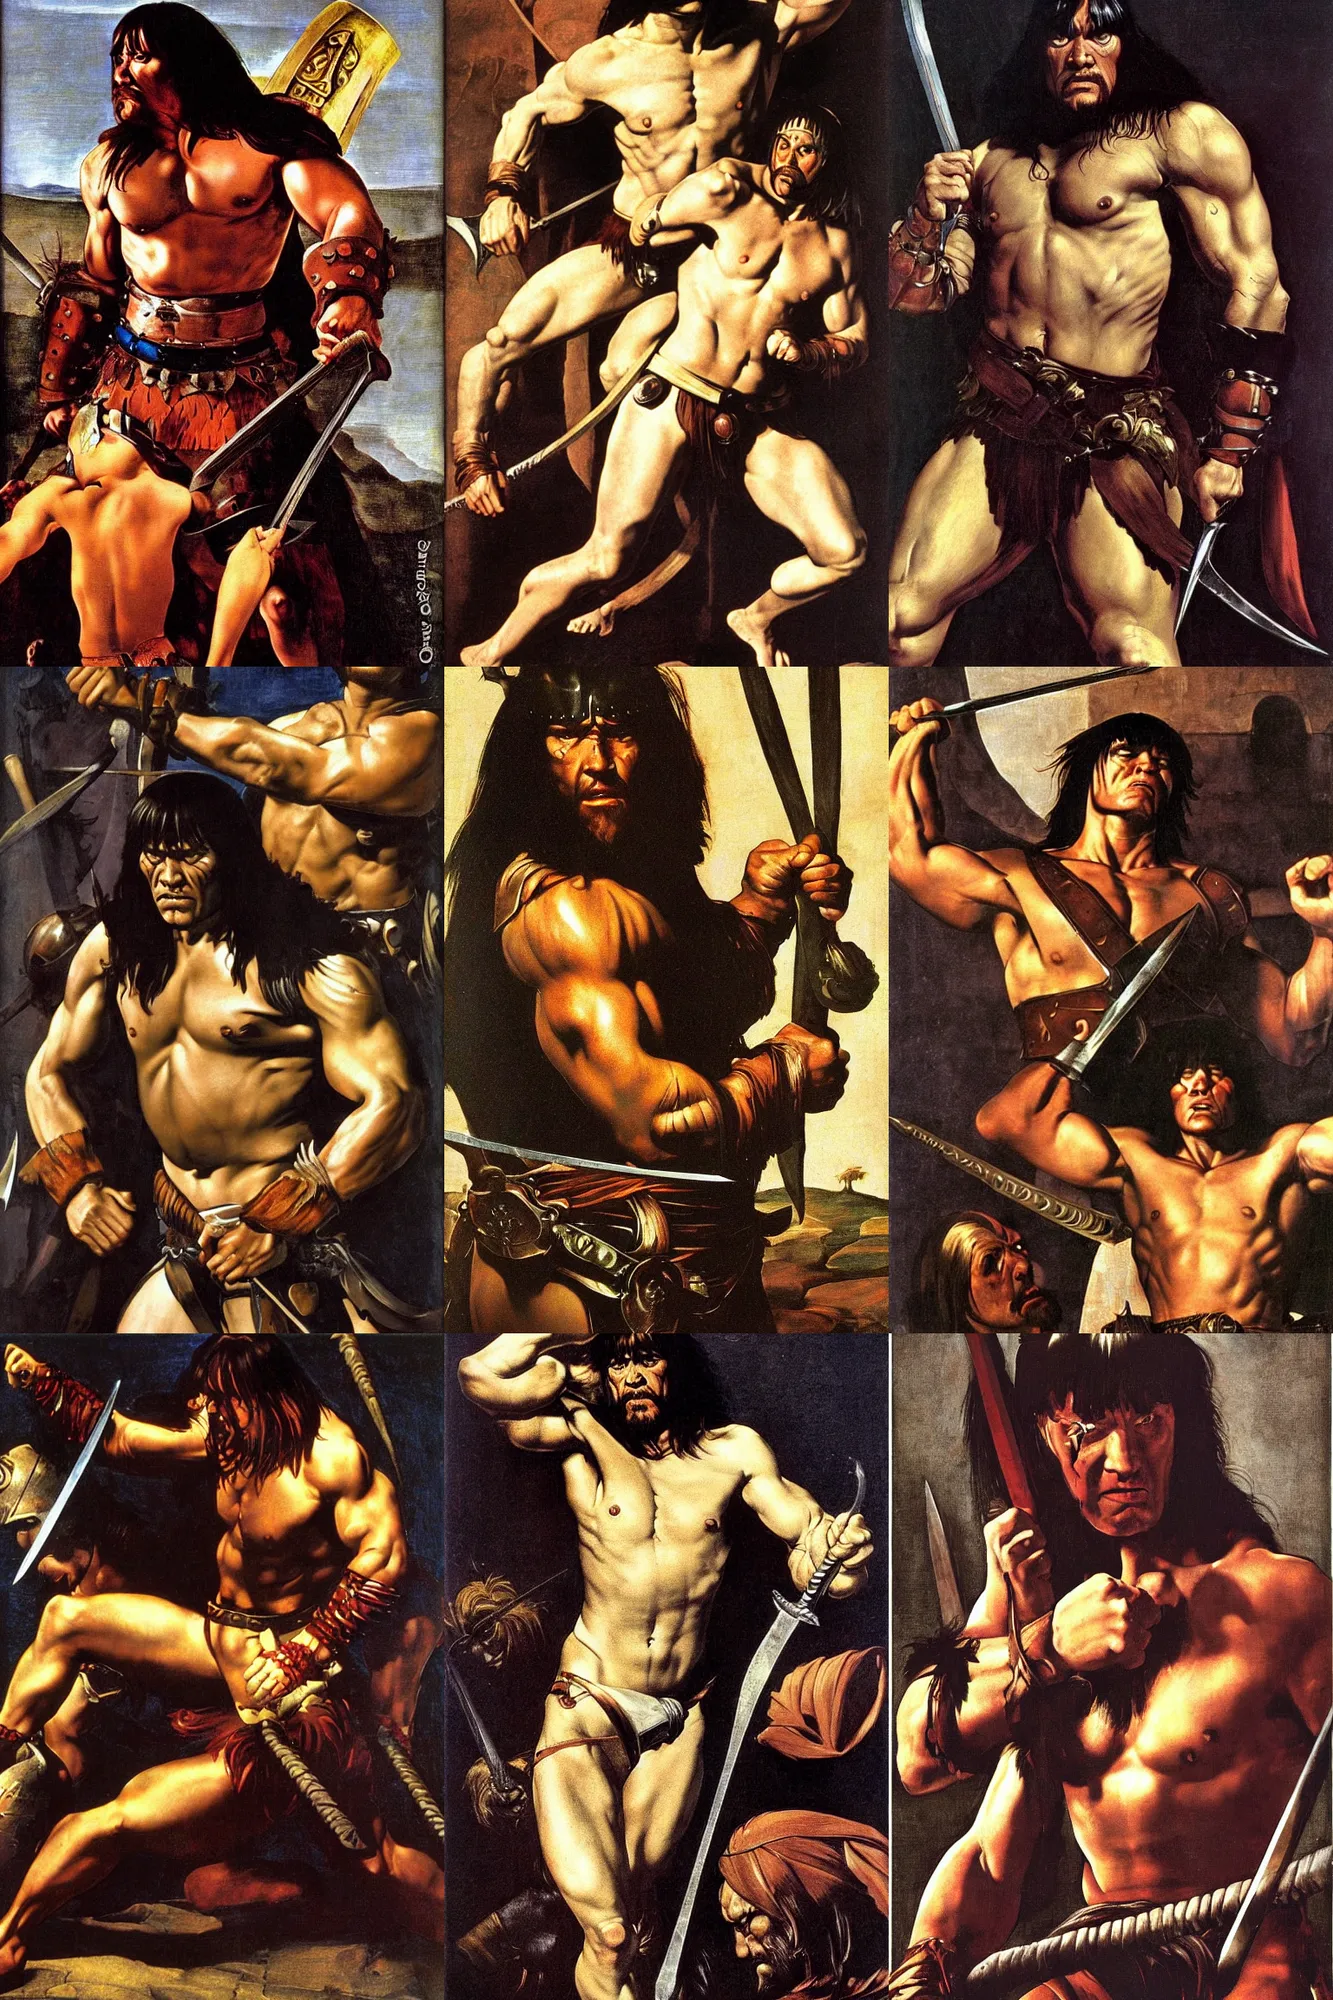 Prompt: conan the barbarian by caravaggio